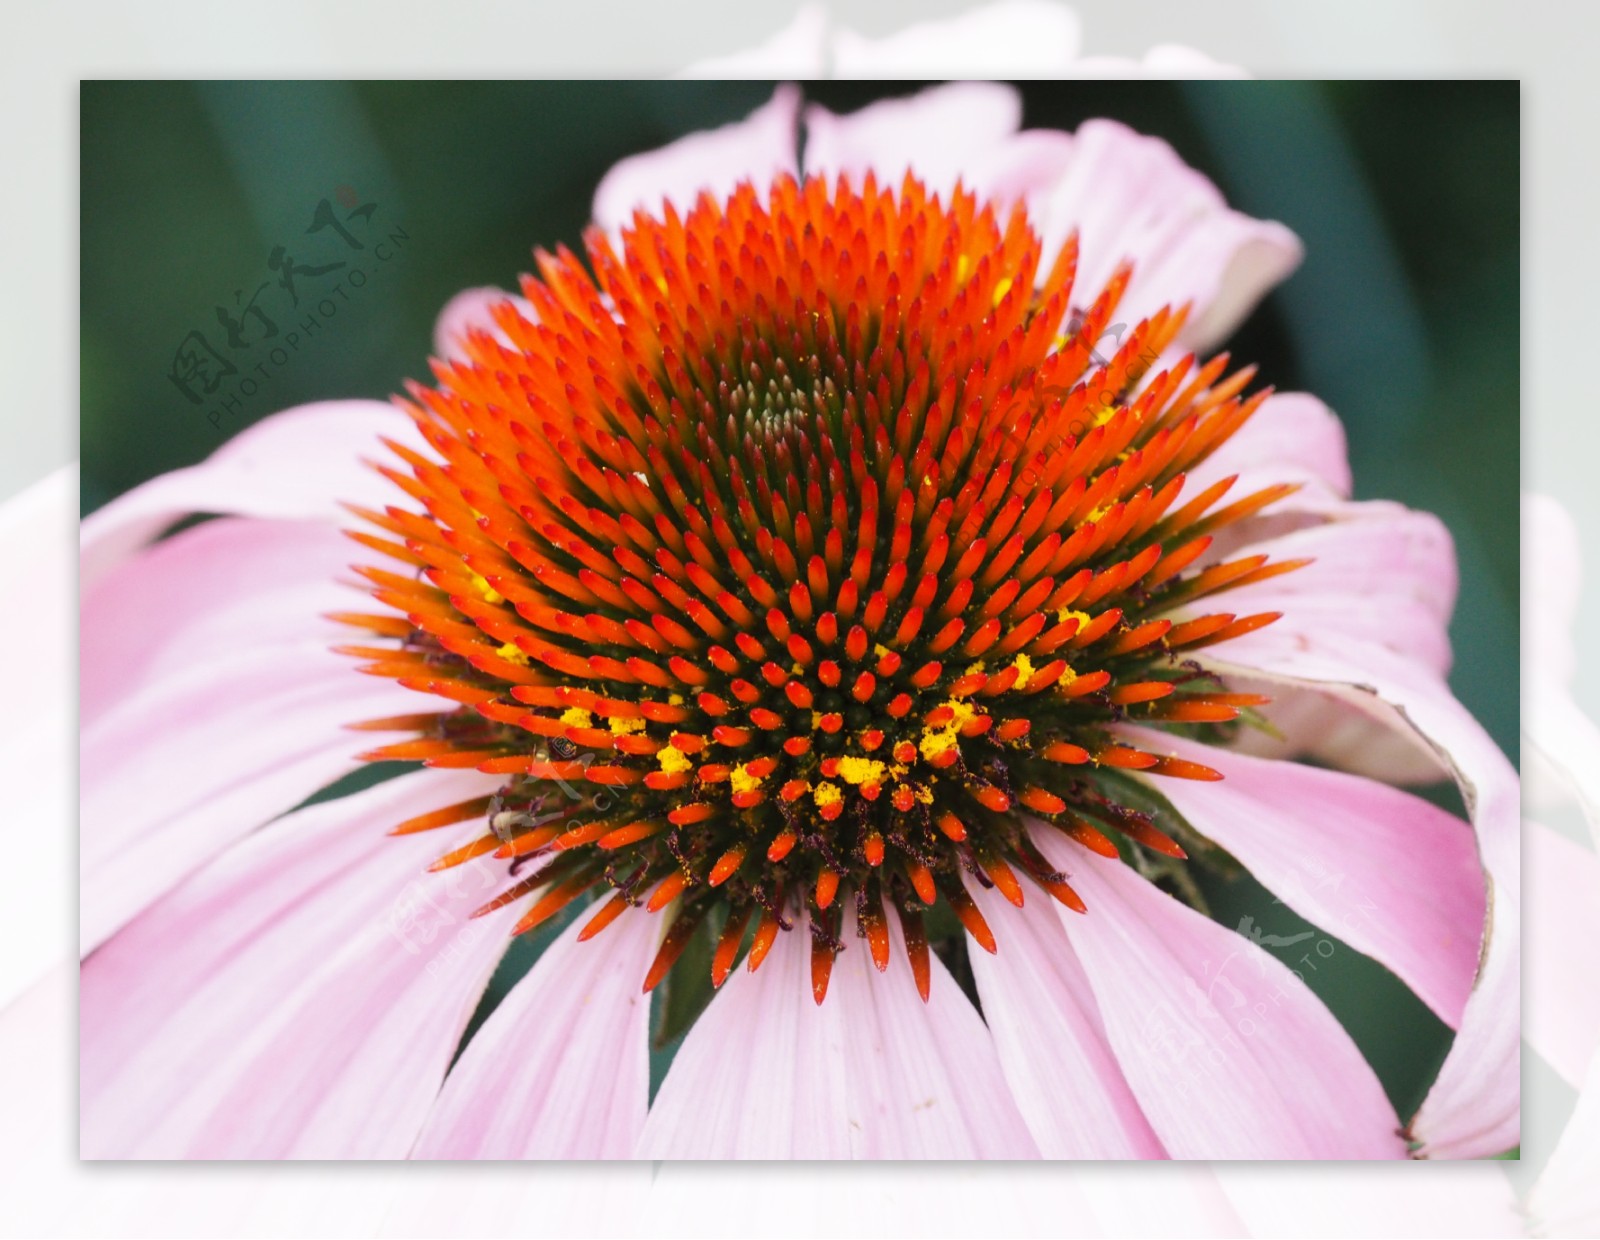 松果菊花朵摄影美图